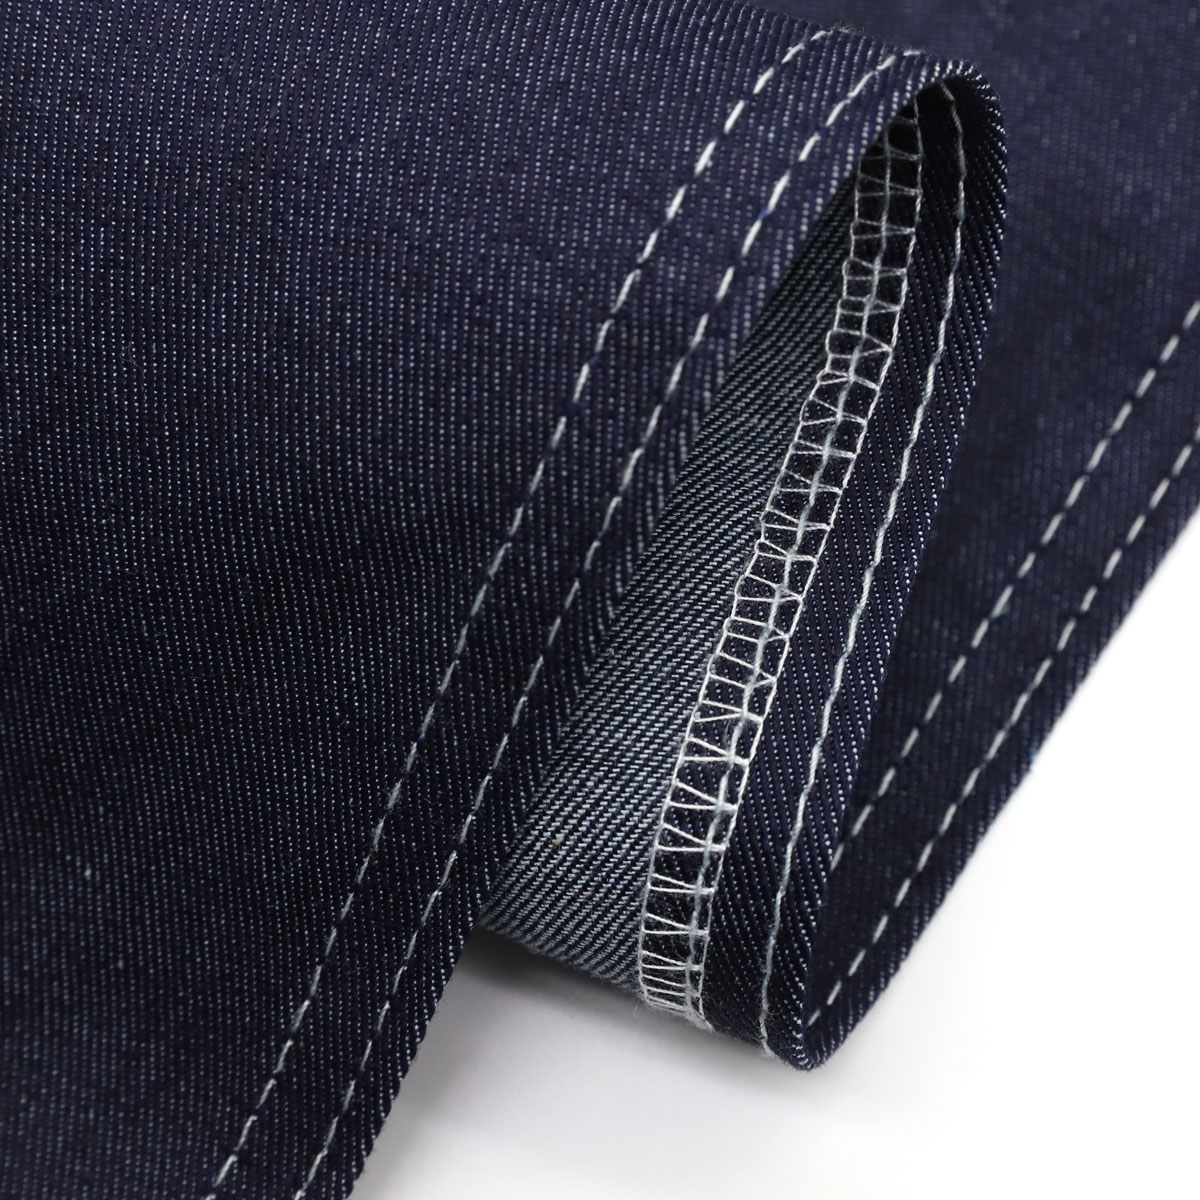 The Best Stretch Denim Jean Fabric Brands 2